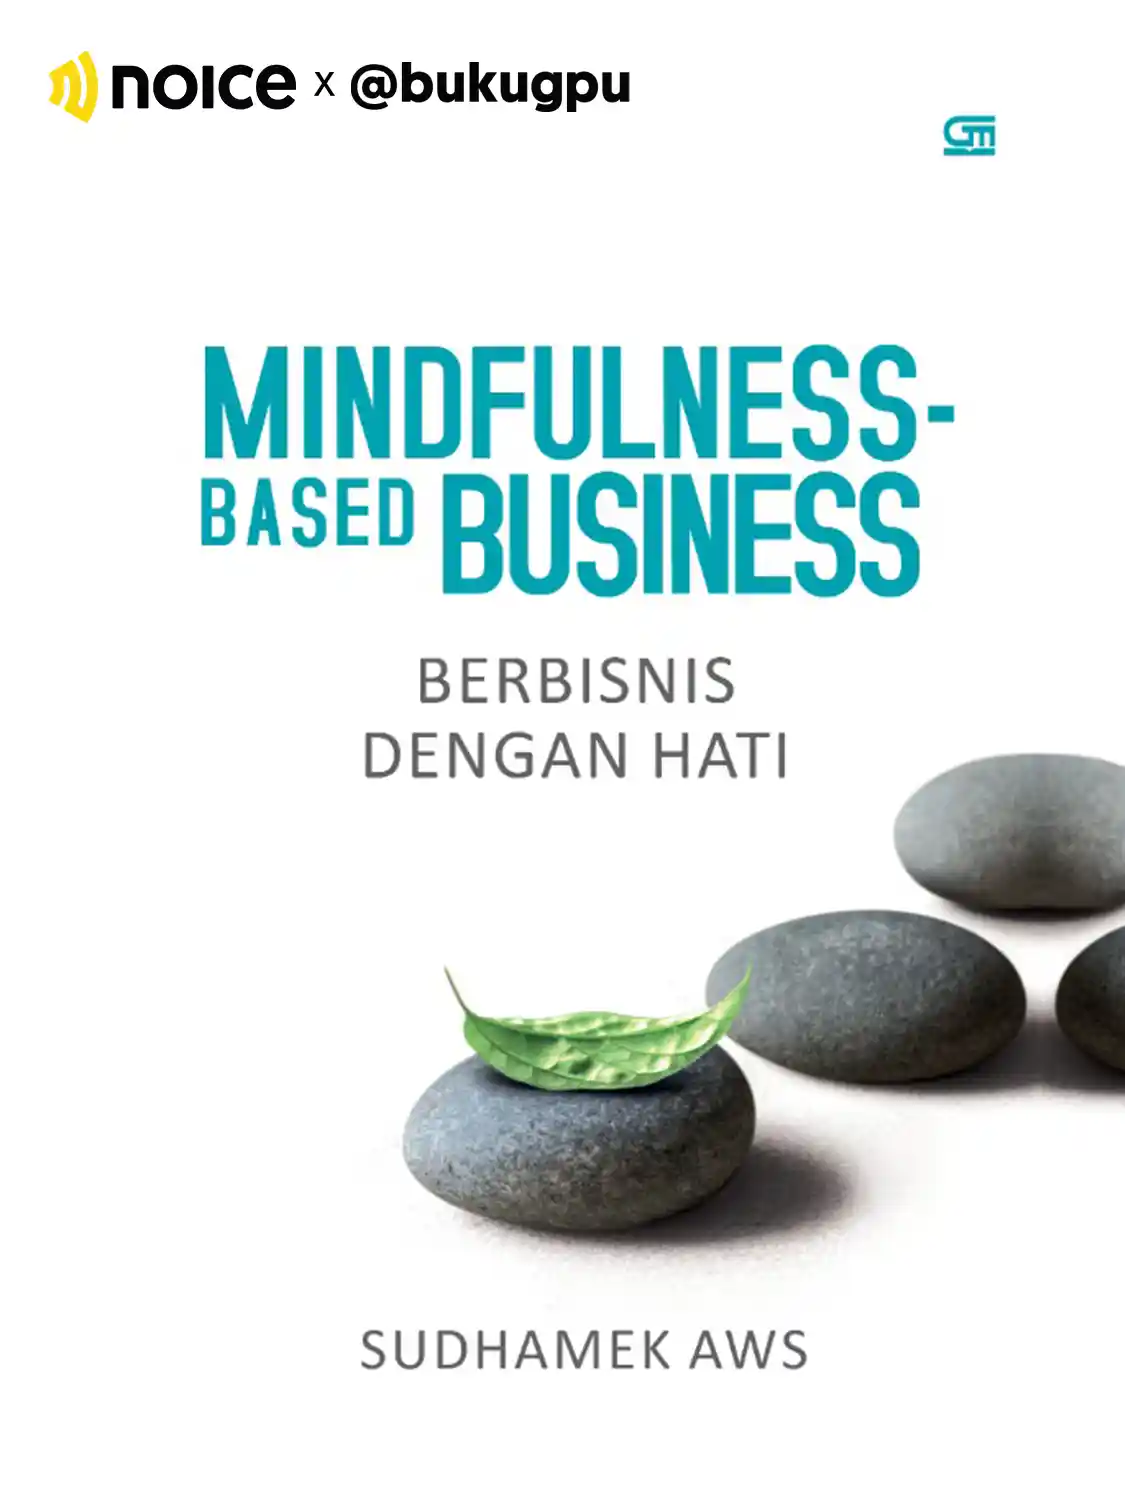 #4 Apa saja sih langkah dan upaya untuk membentuk Mindfulness-Based Business?